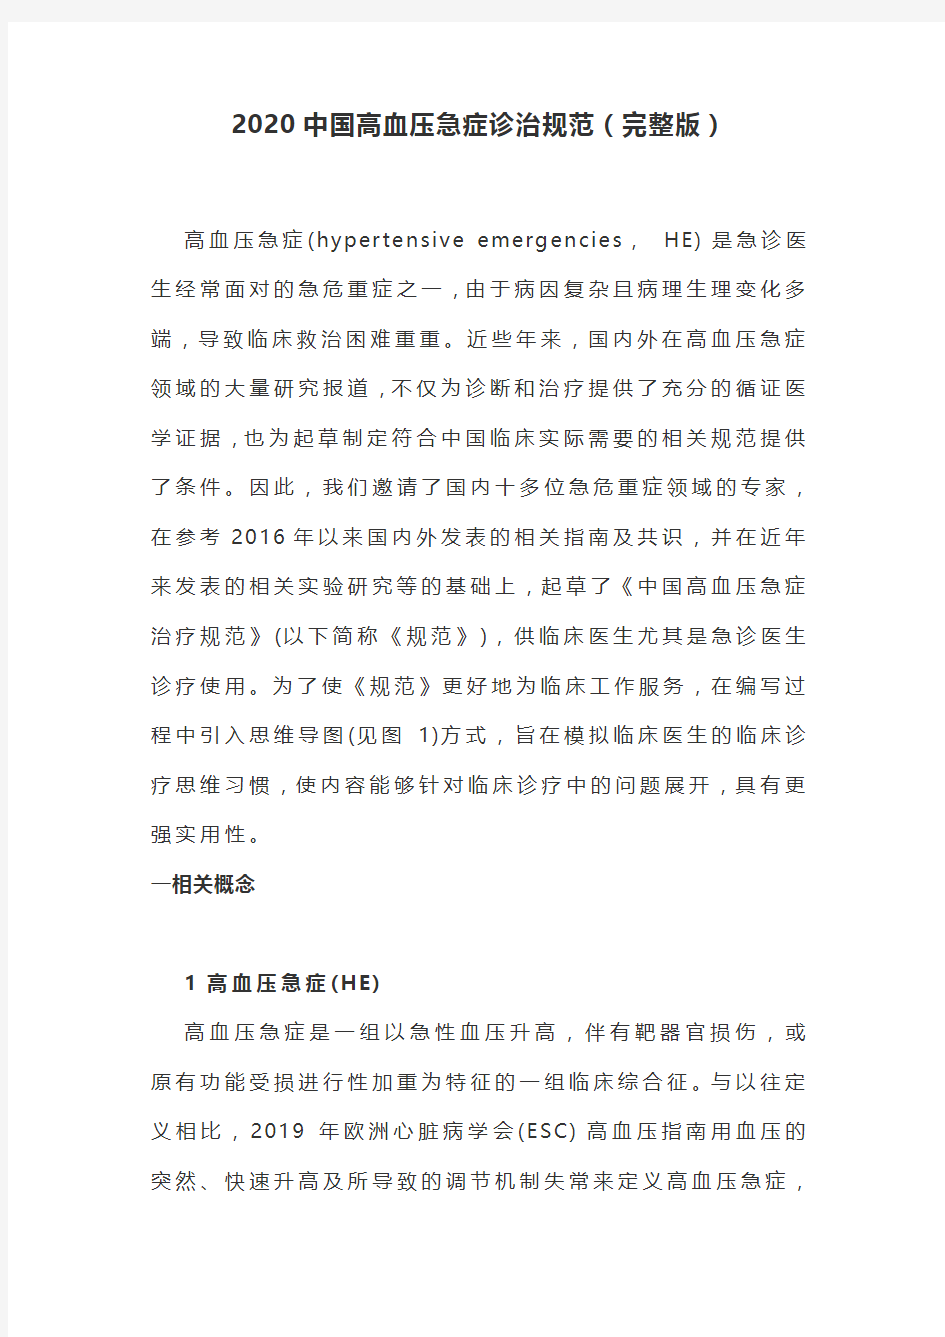 2020中国高血压急症诊治规范(完整版)